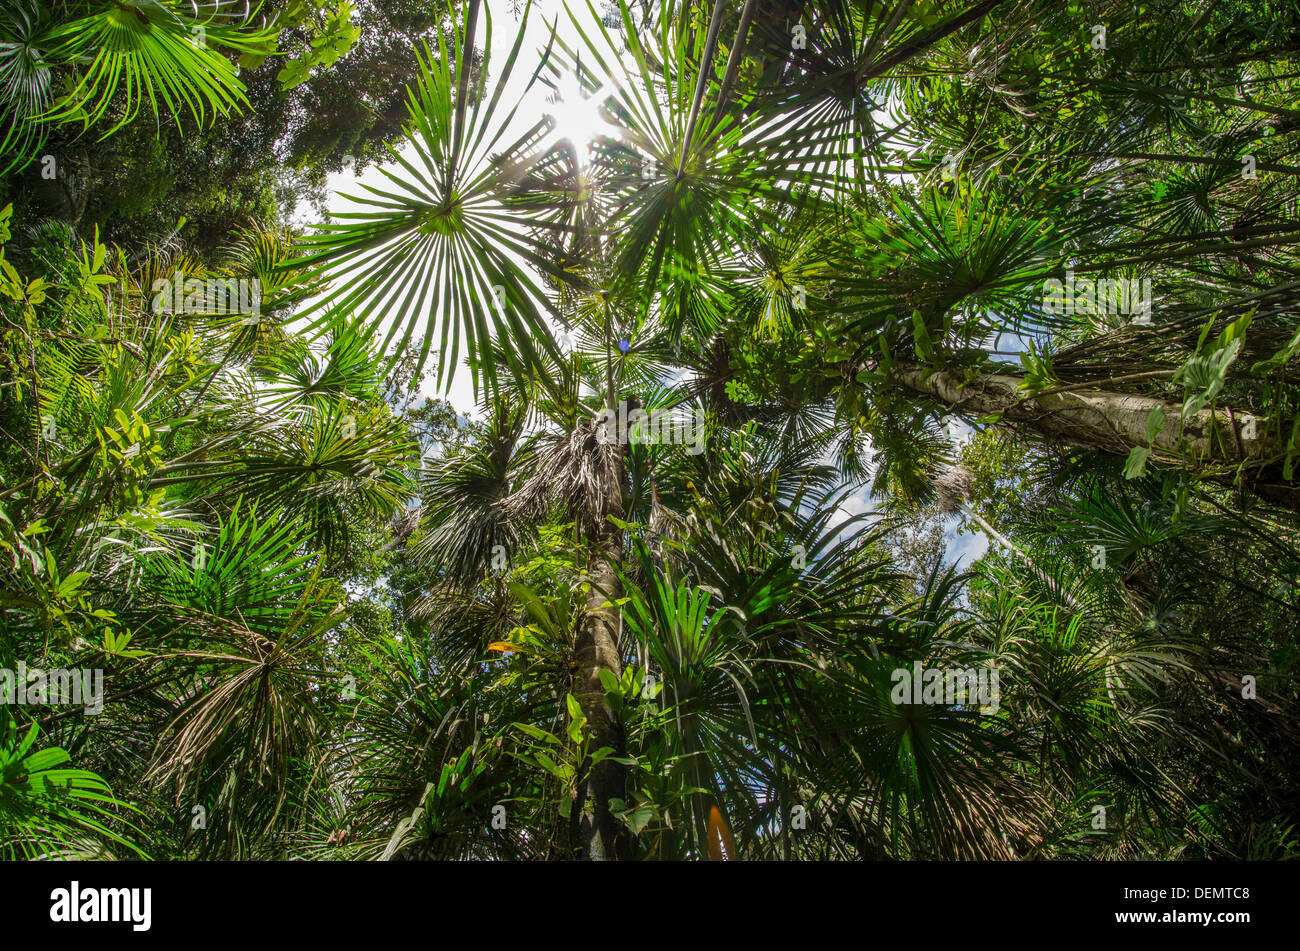 Aguajal or buritzal palm swamp, rainforest, Rio Napo, amazon, Peru Stock Photo